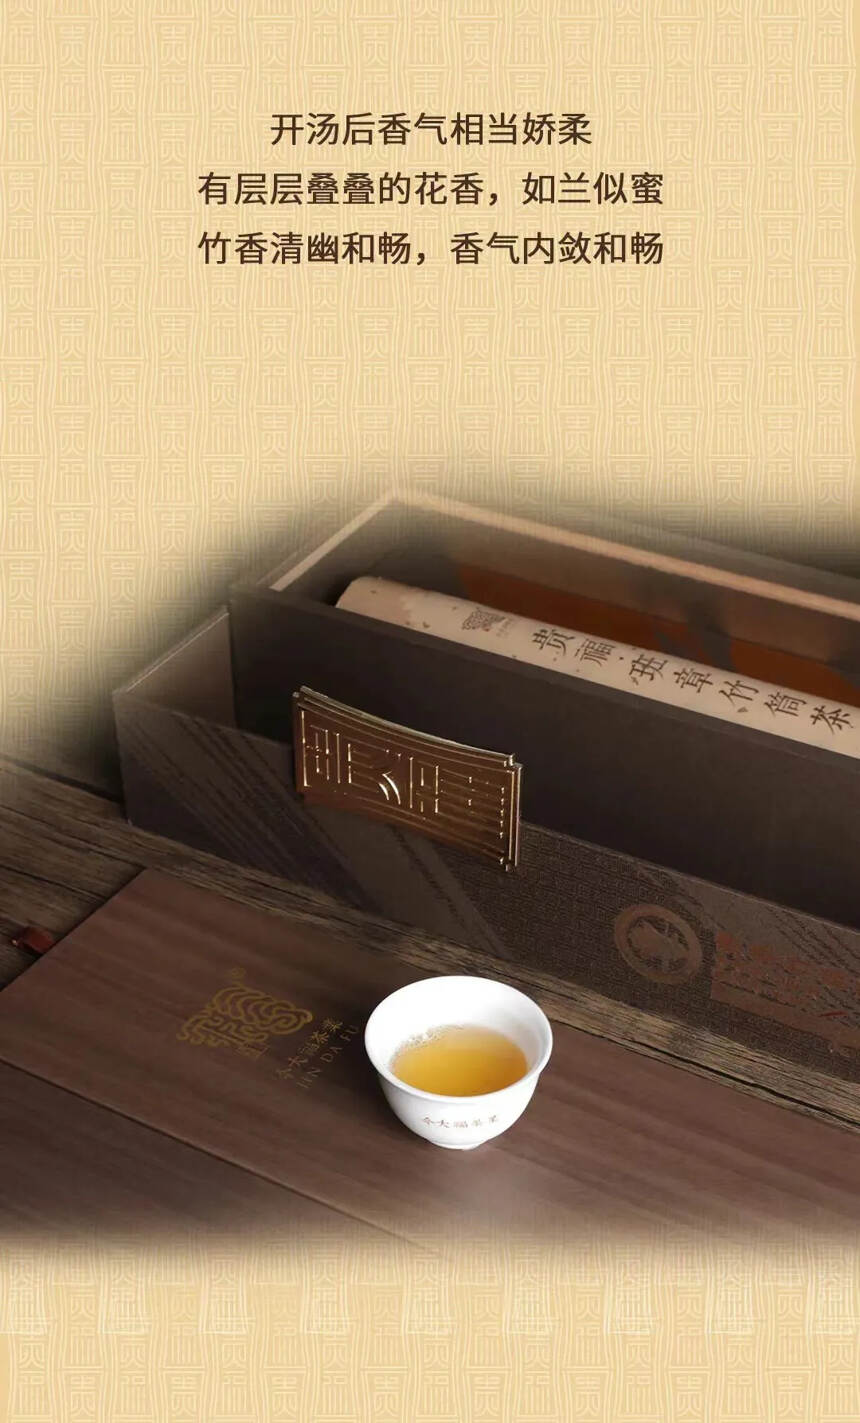 茶博会三款新品同时上市
2022贵福·班章竹筒茶
2